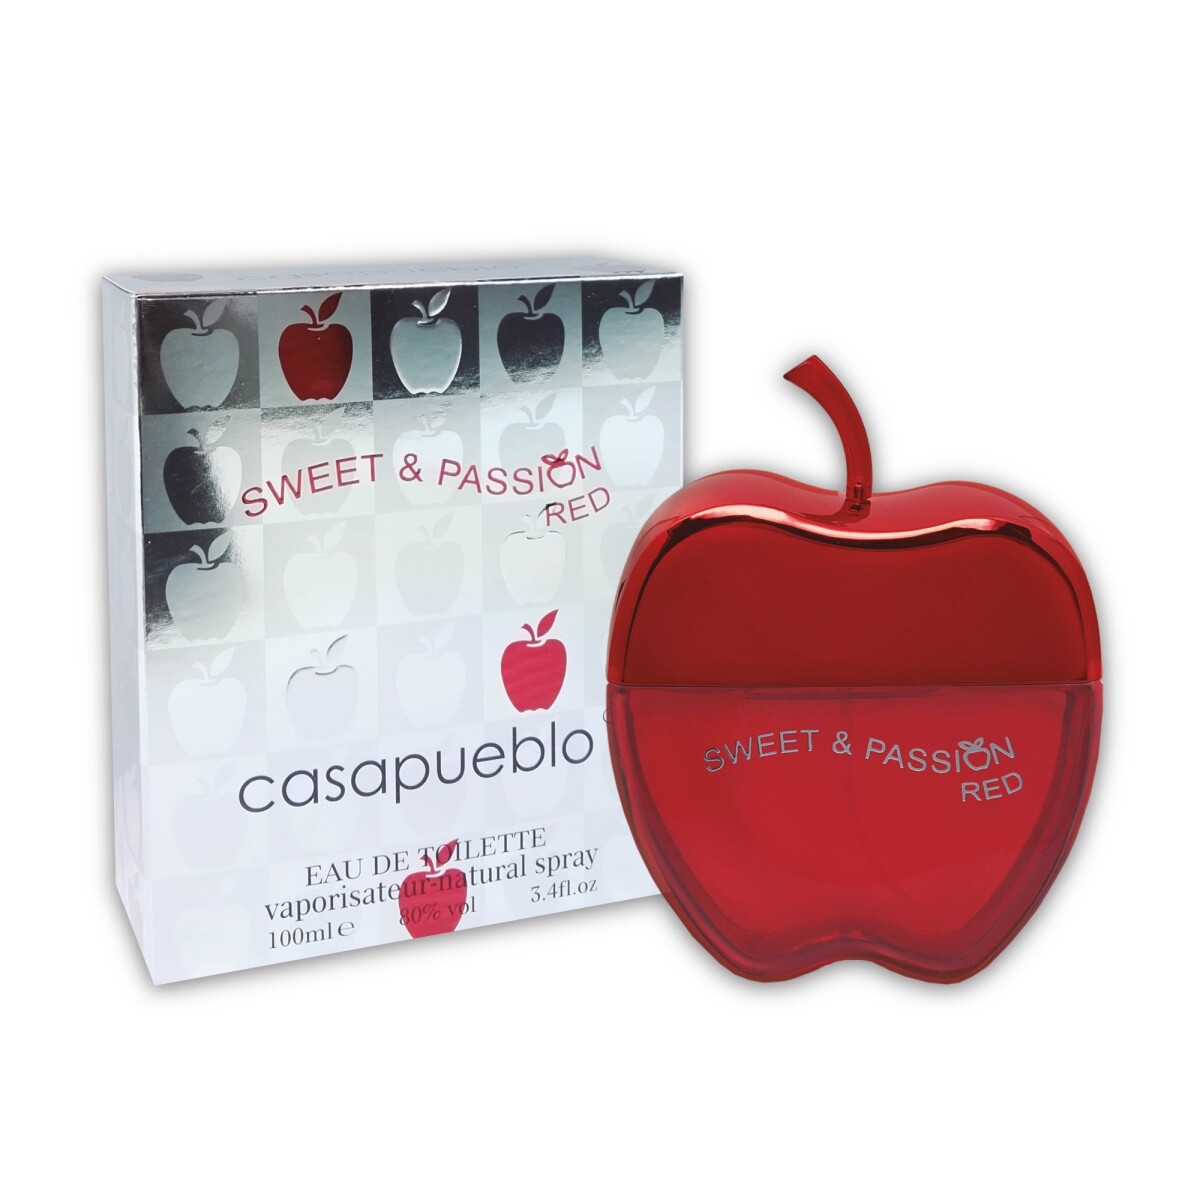 Casapueblo Sweet & Passion edt 100 ml - Red 